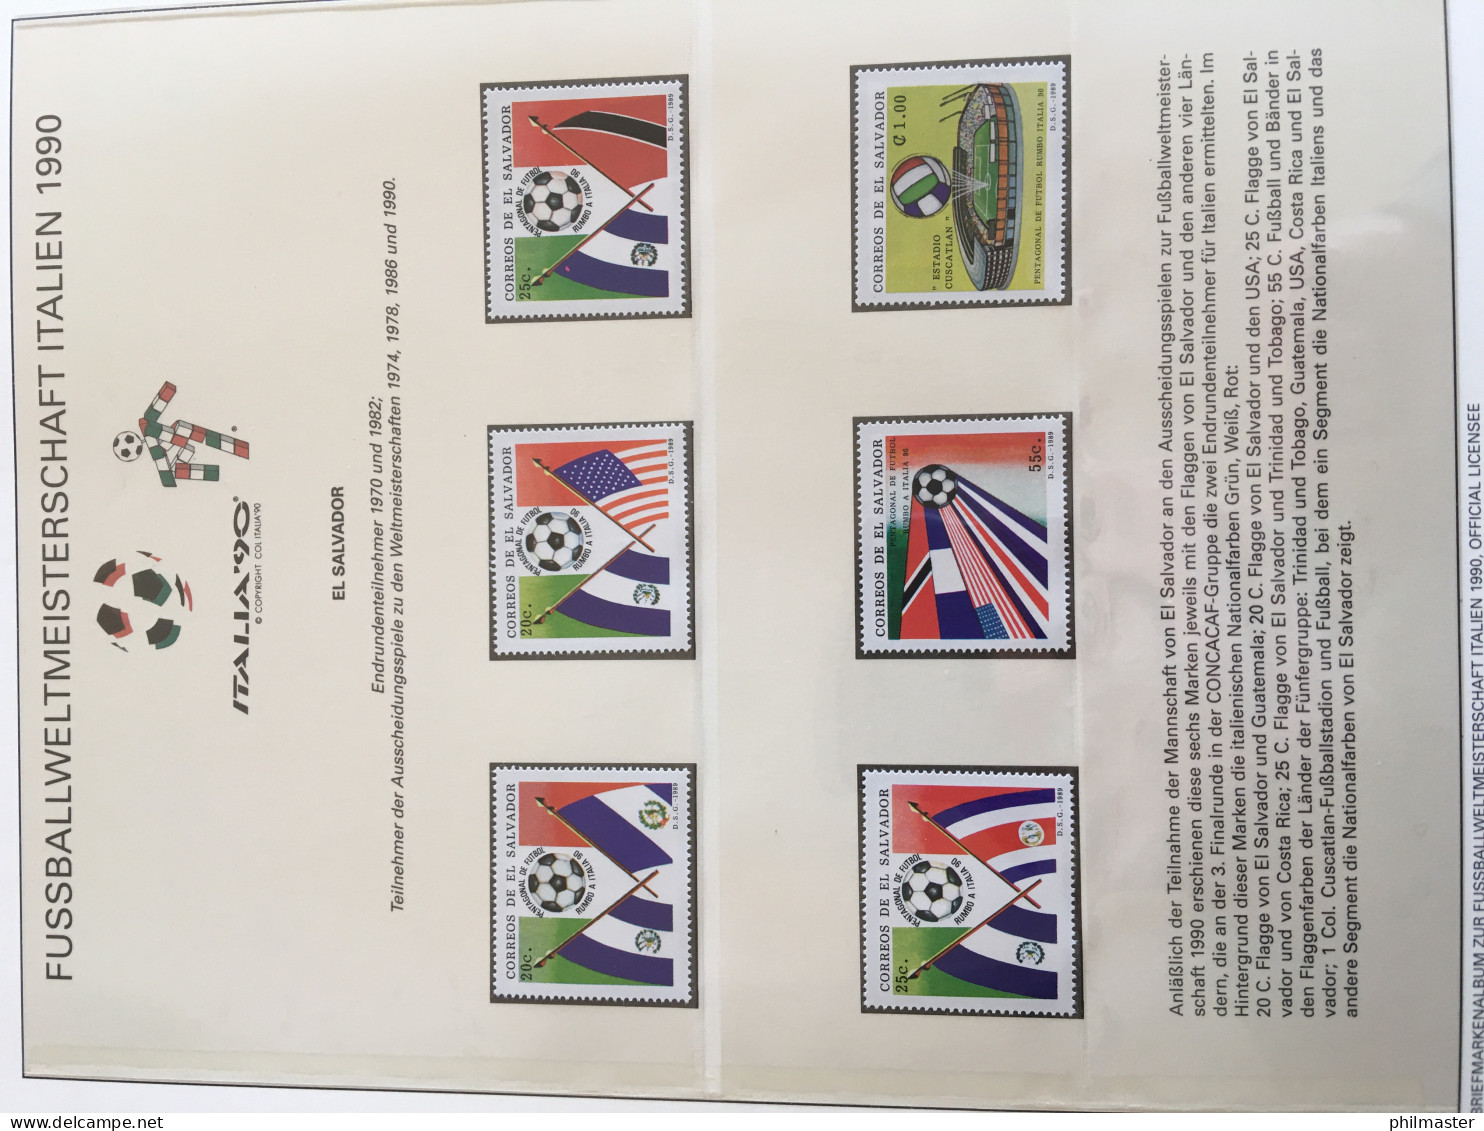 Fußball-WM 1990 Italien, offizielle Sammlung im Lindner-Ringbinder